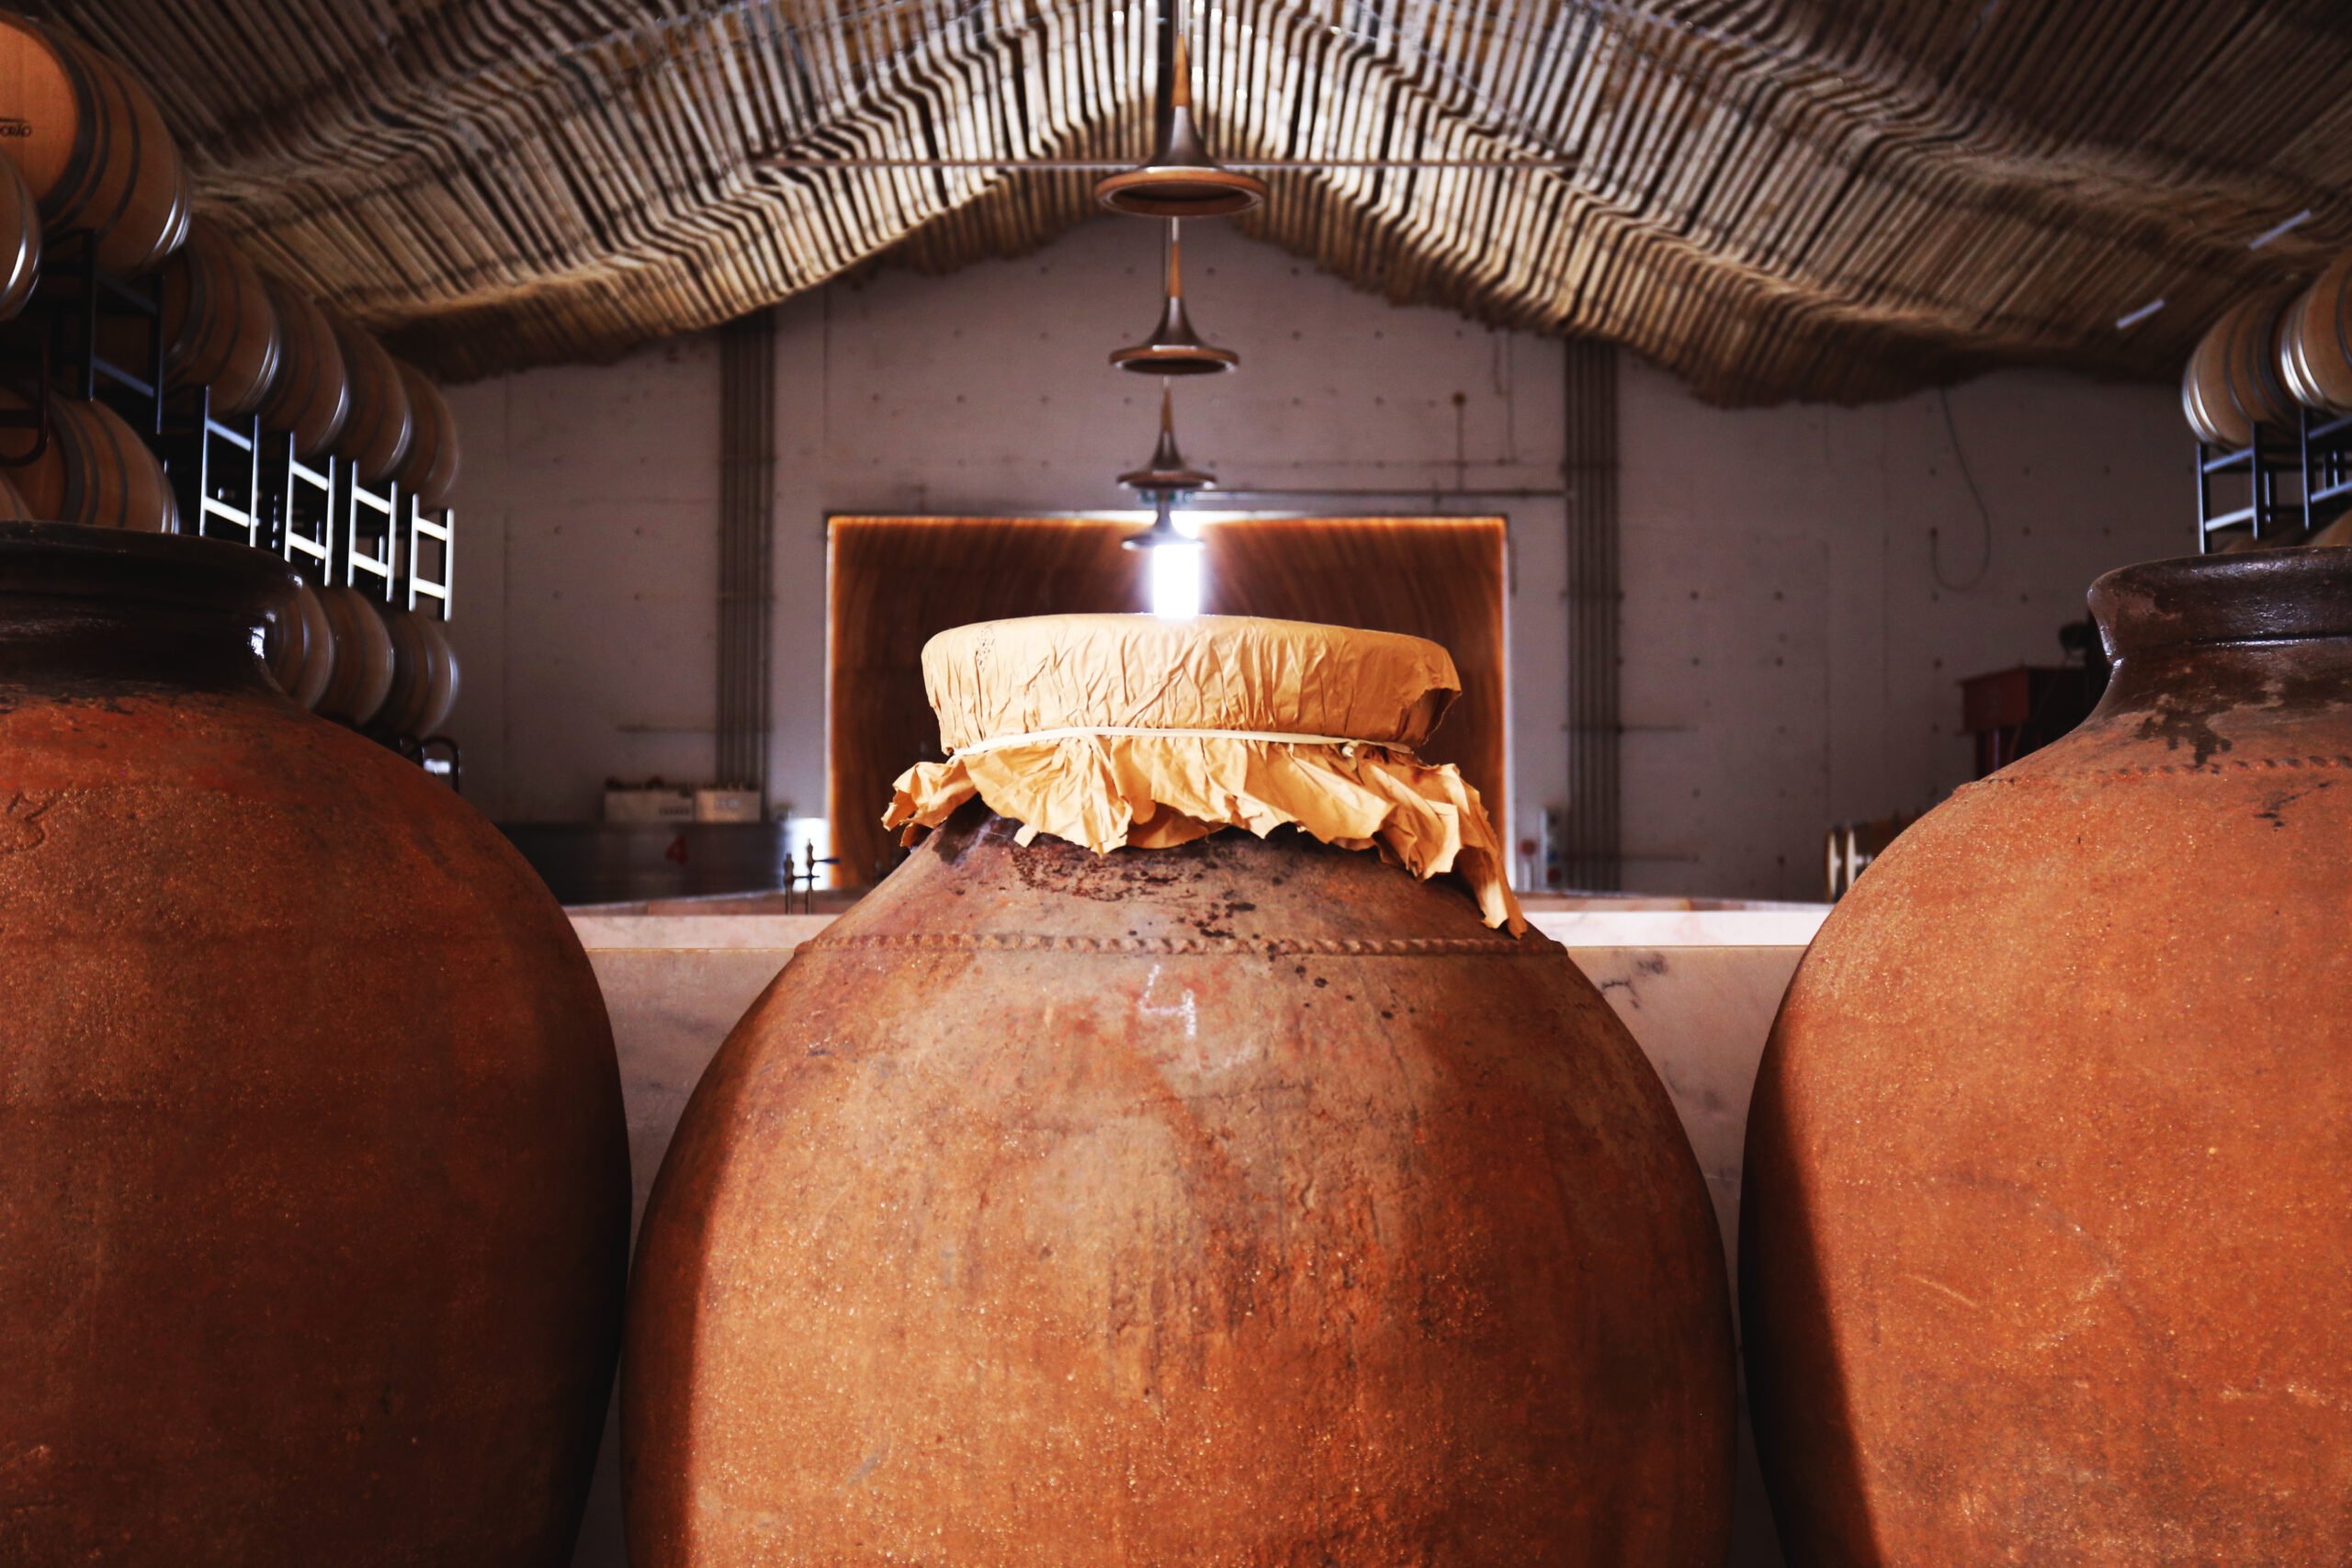 Algumas vinícolas utilizam a talha, técnica de fermentação em grandes recipientes feitos de barro